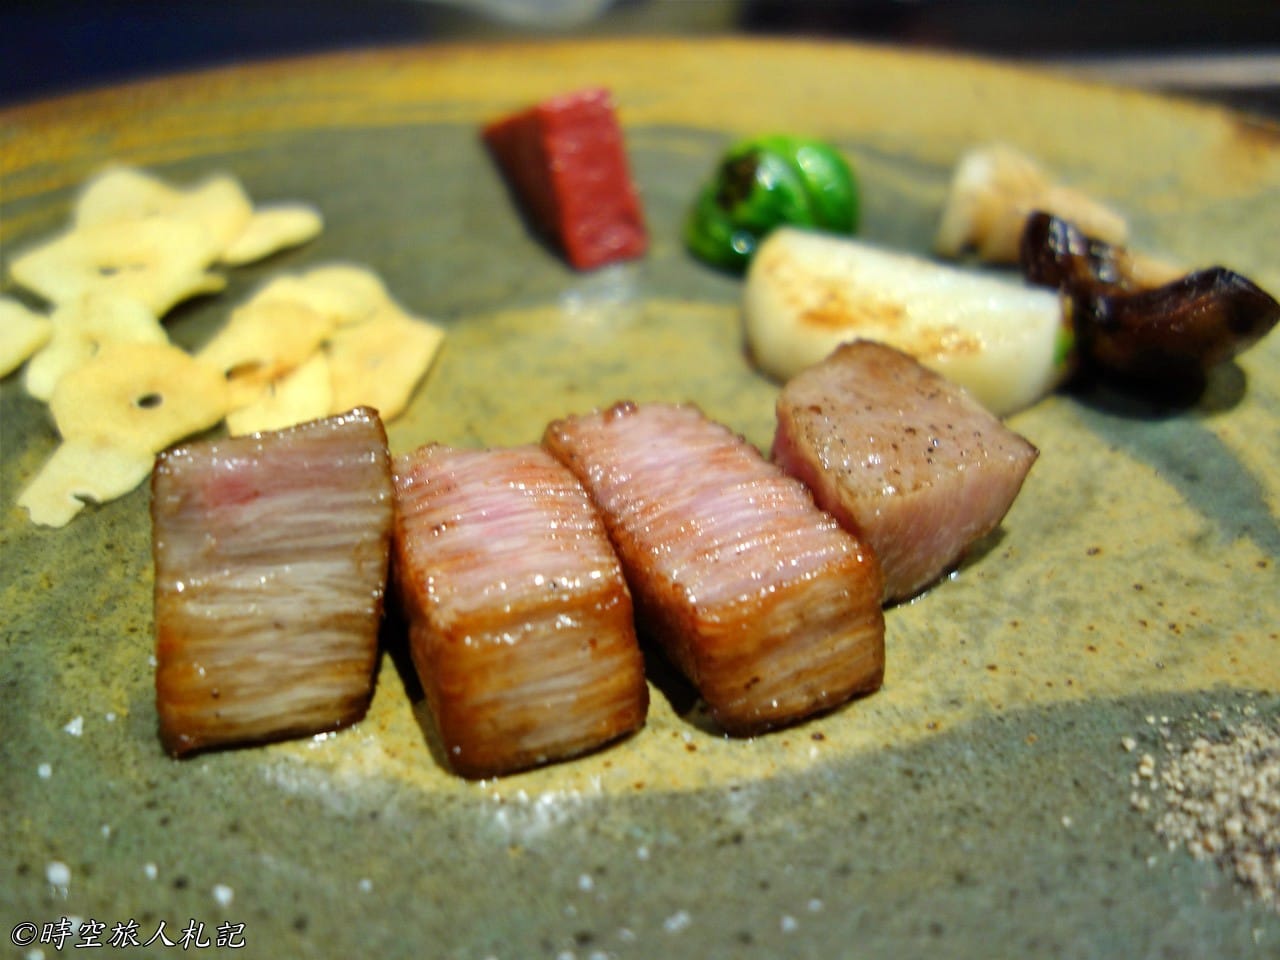 神戶美食,kobe-food,日本神戶美食 23